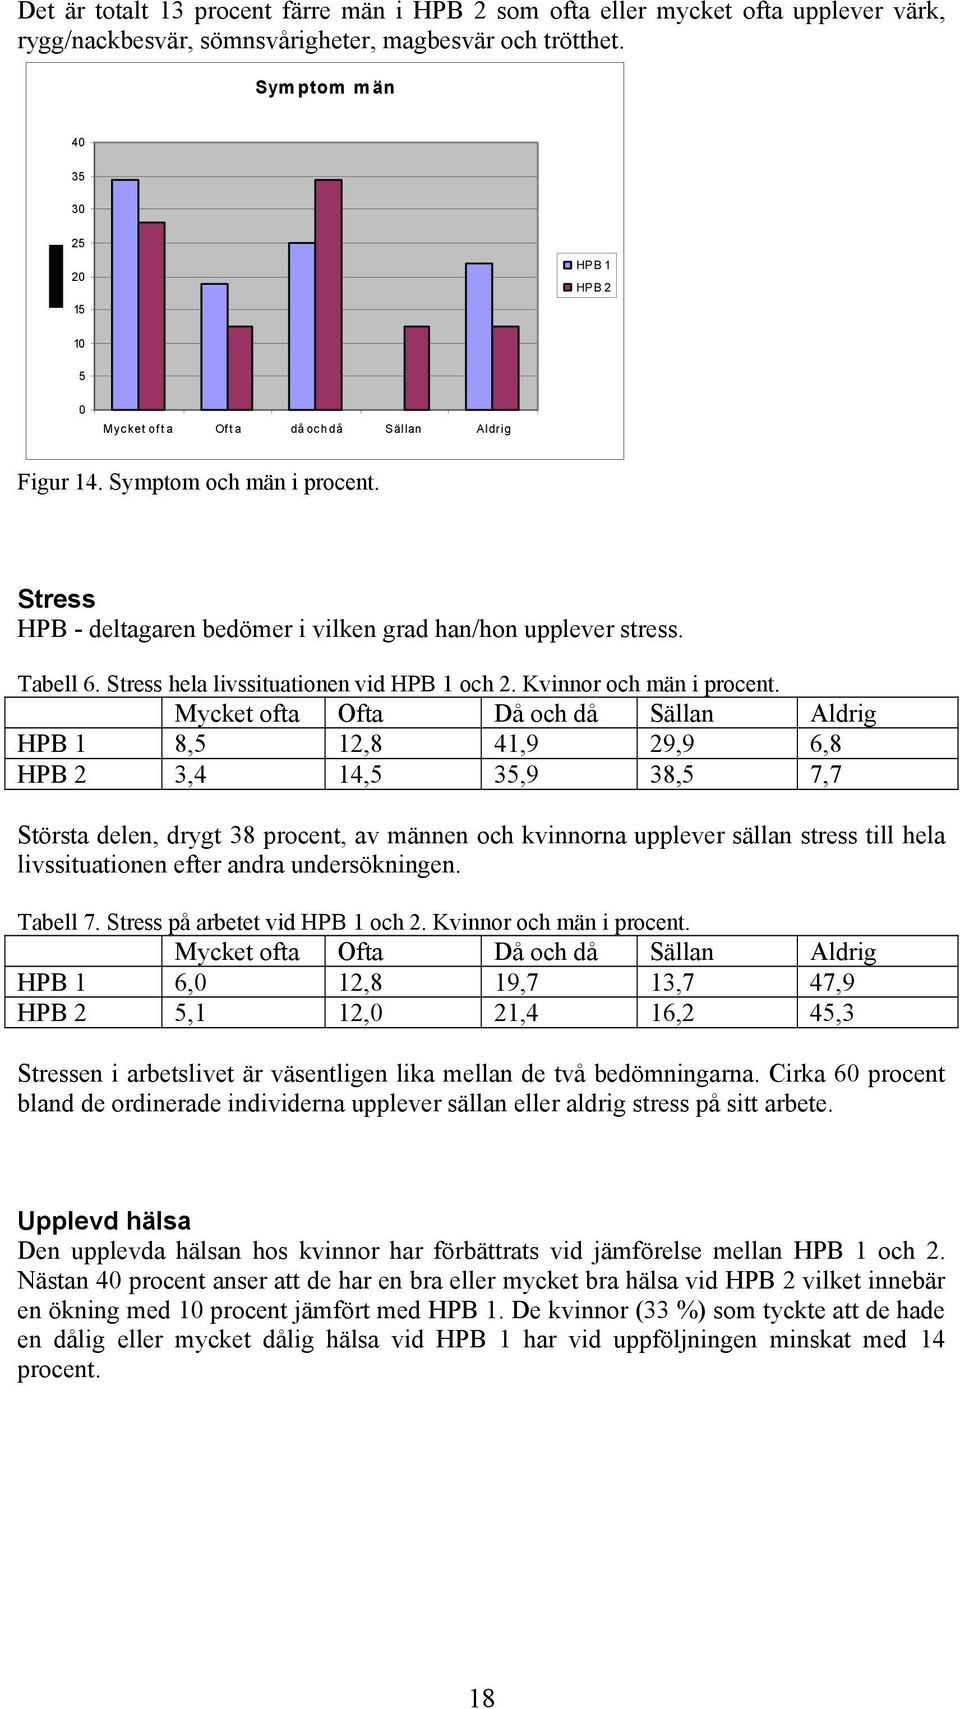 Tabell 6. Stress hela livssituationen vid HPB 1 och 2. Kvinnor och män i procent.